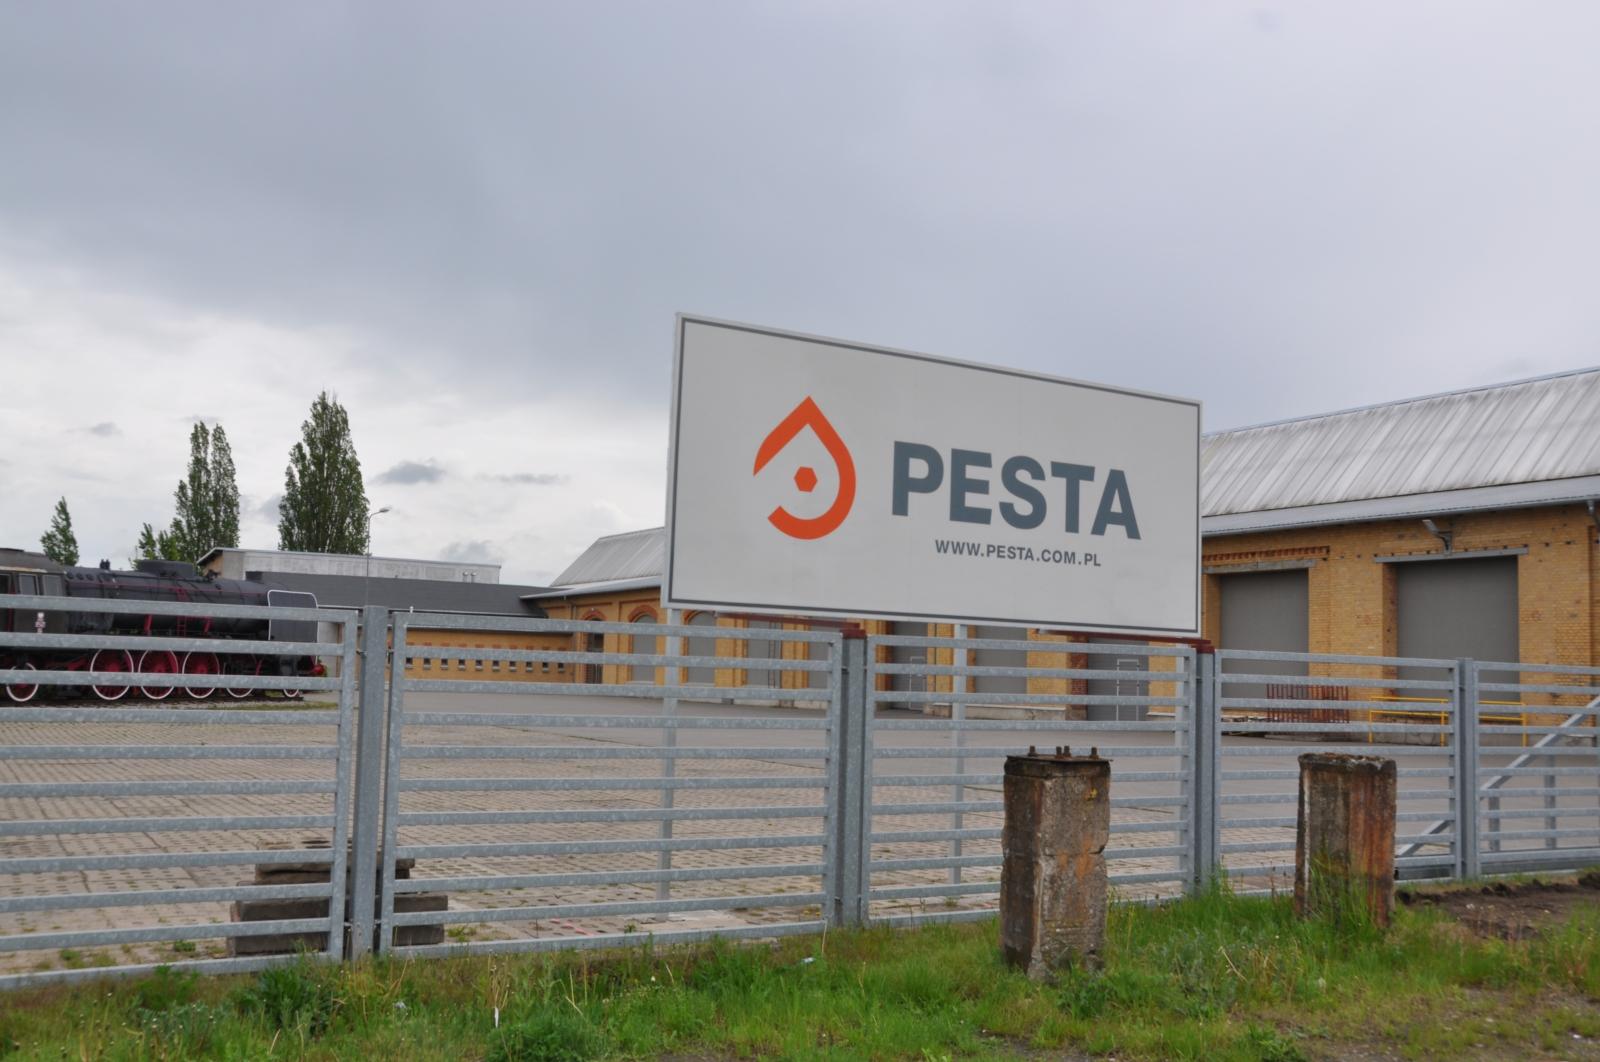 Zdjęcia obiektów PESTA2_9